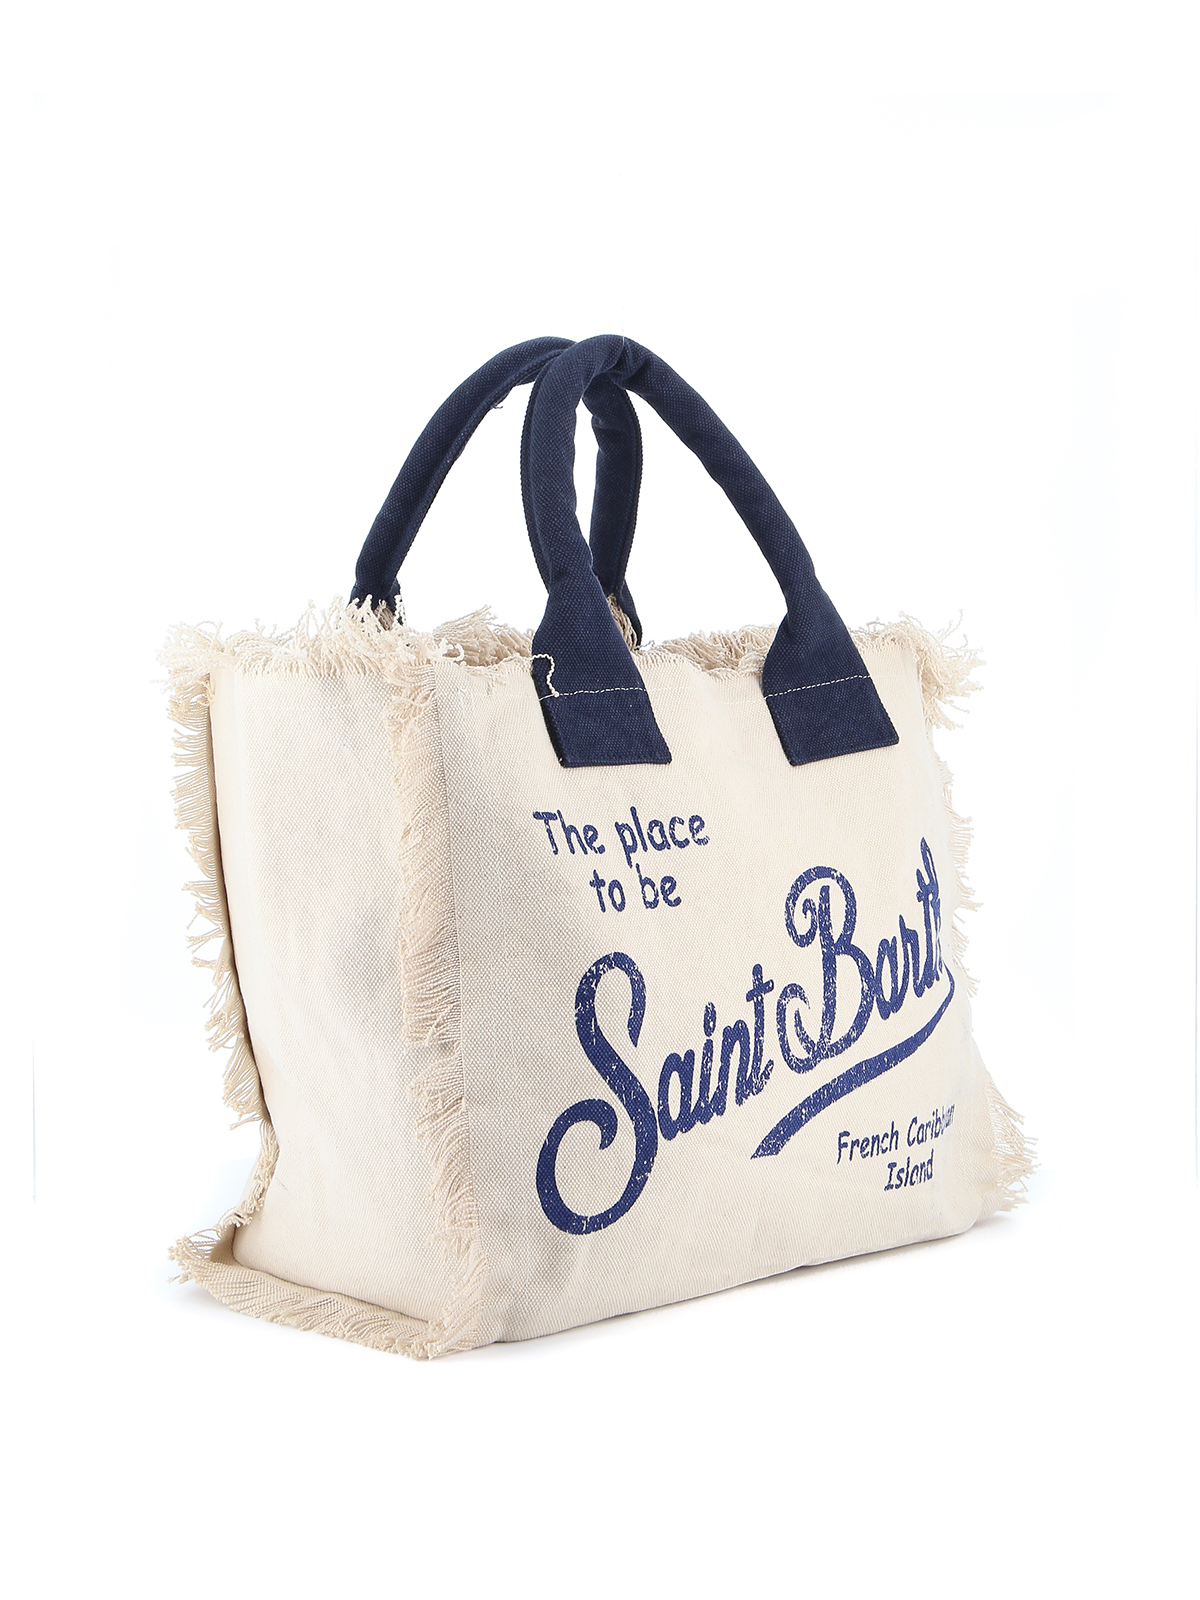 saint barth beach bag